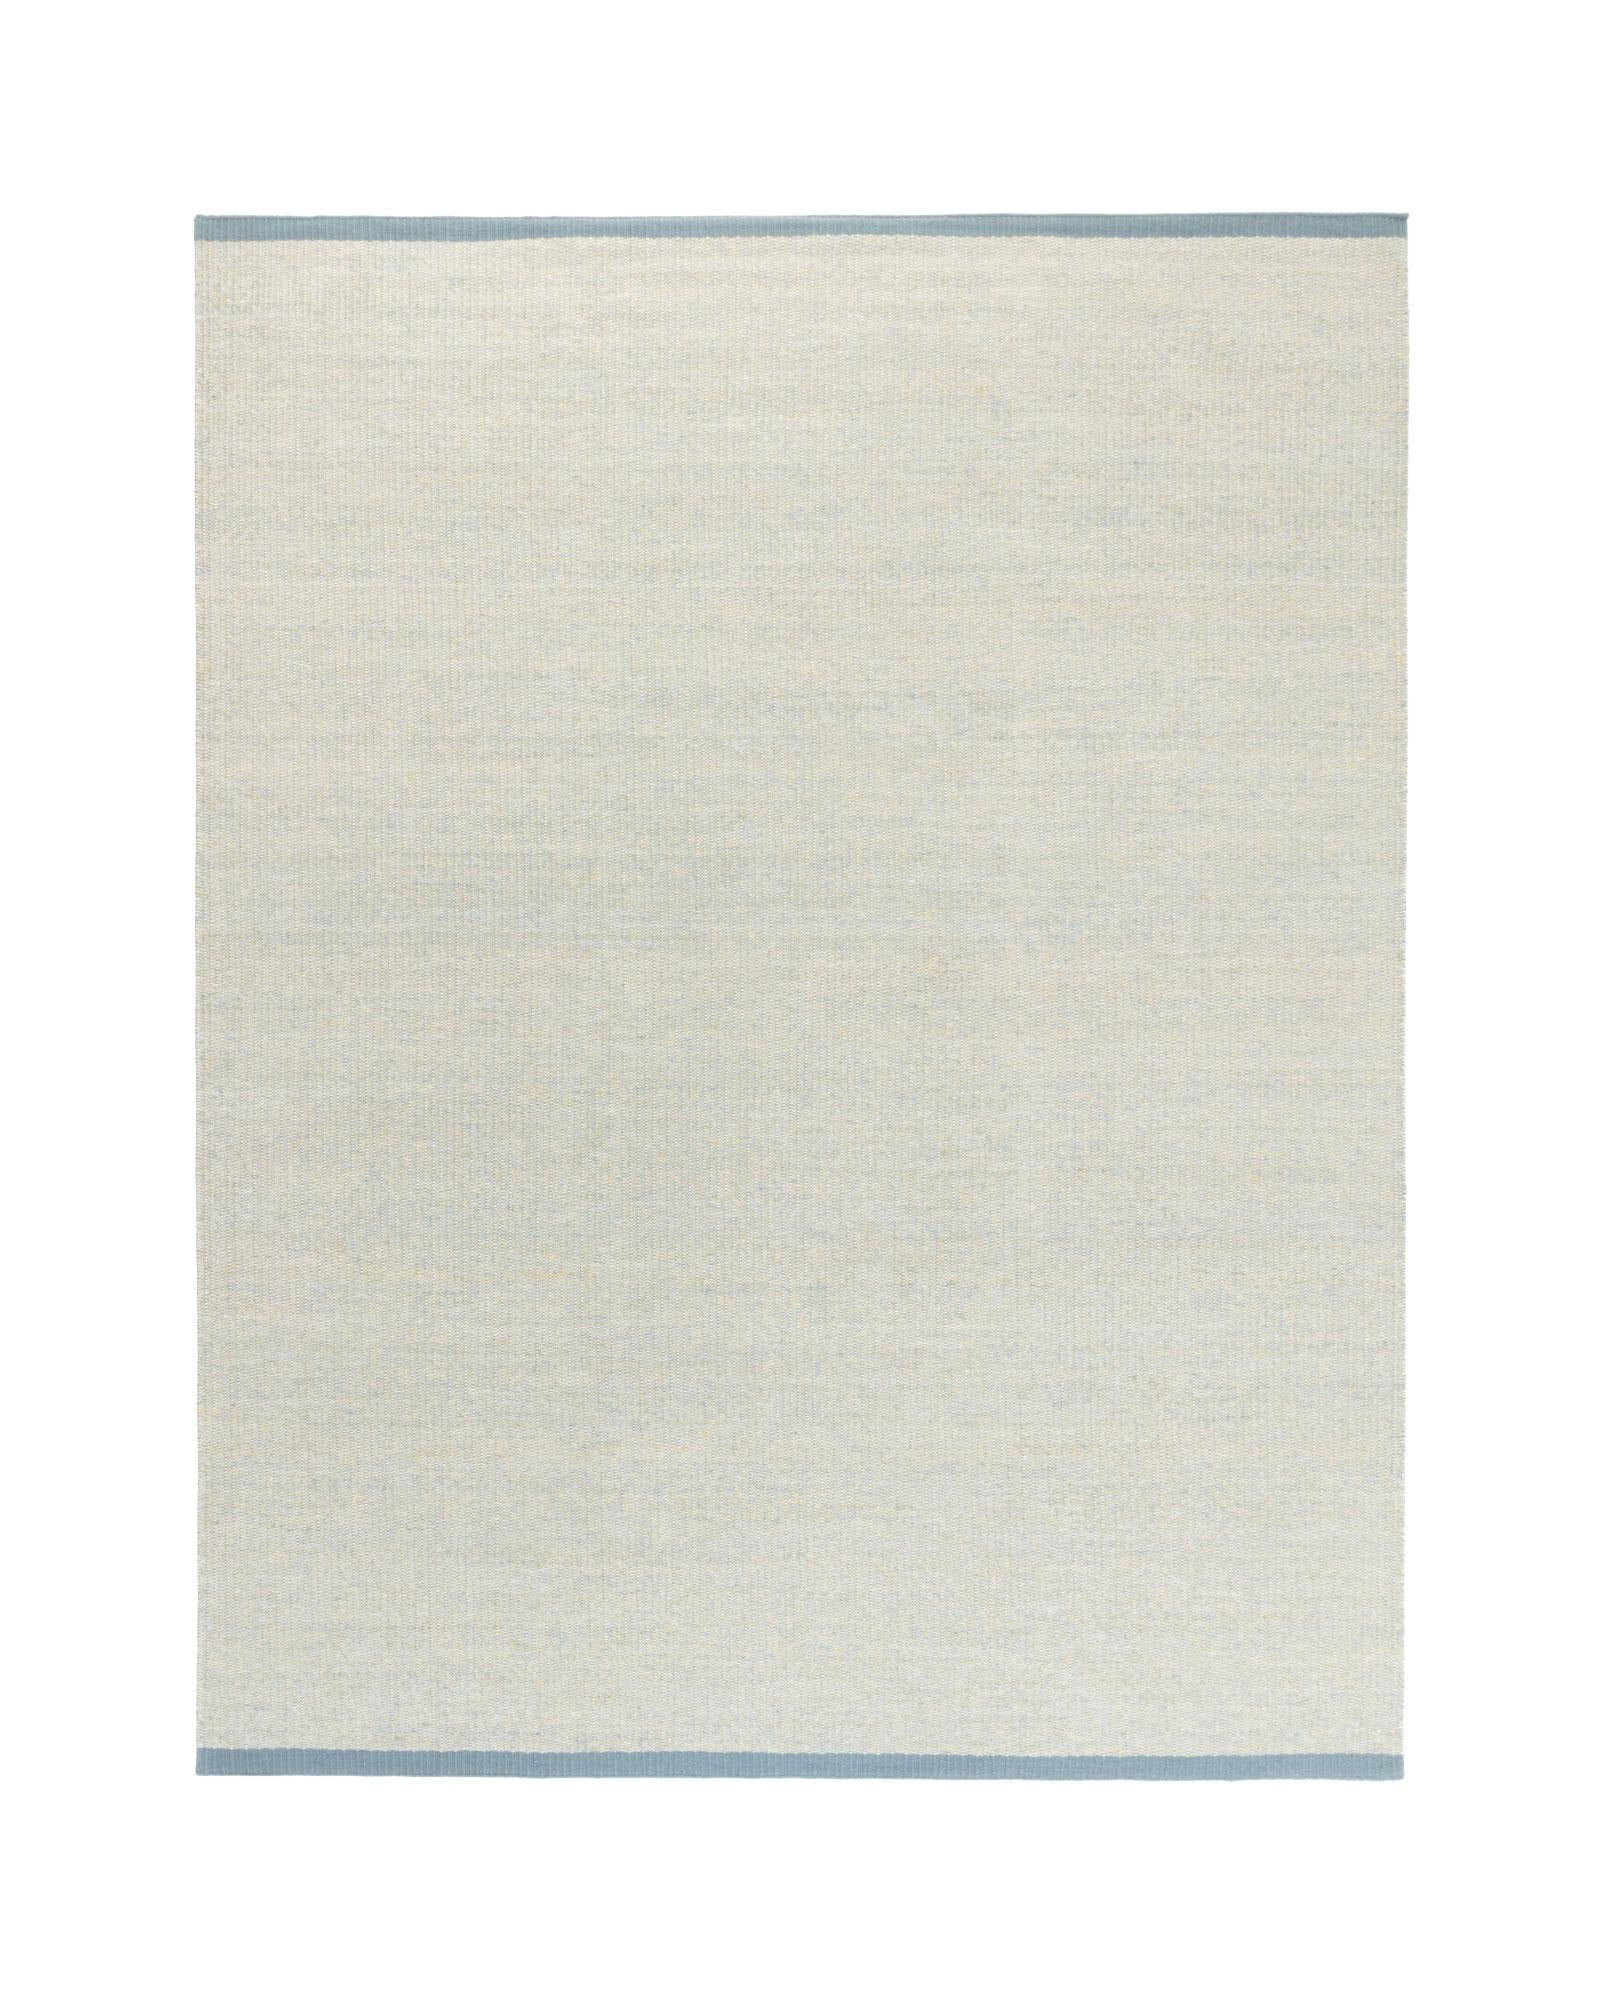 Sky est un tapis produit par la marque cc-tapis. Le tapis Sky fait partie de la Collection S et est composé à 100 % de laine, ce qui lui confère un toucher doux.

Le tapis Sky est disponible en deux couleurs et constitue une combinaison parfaite